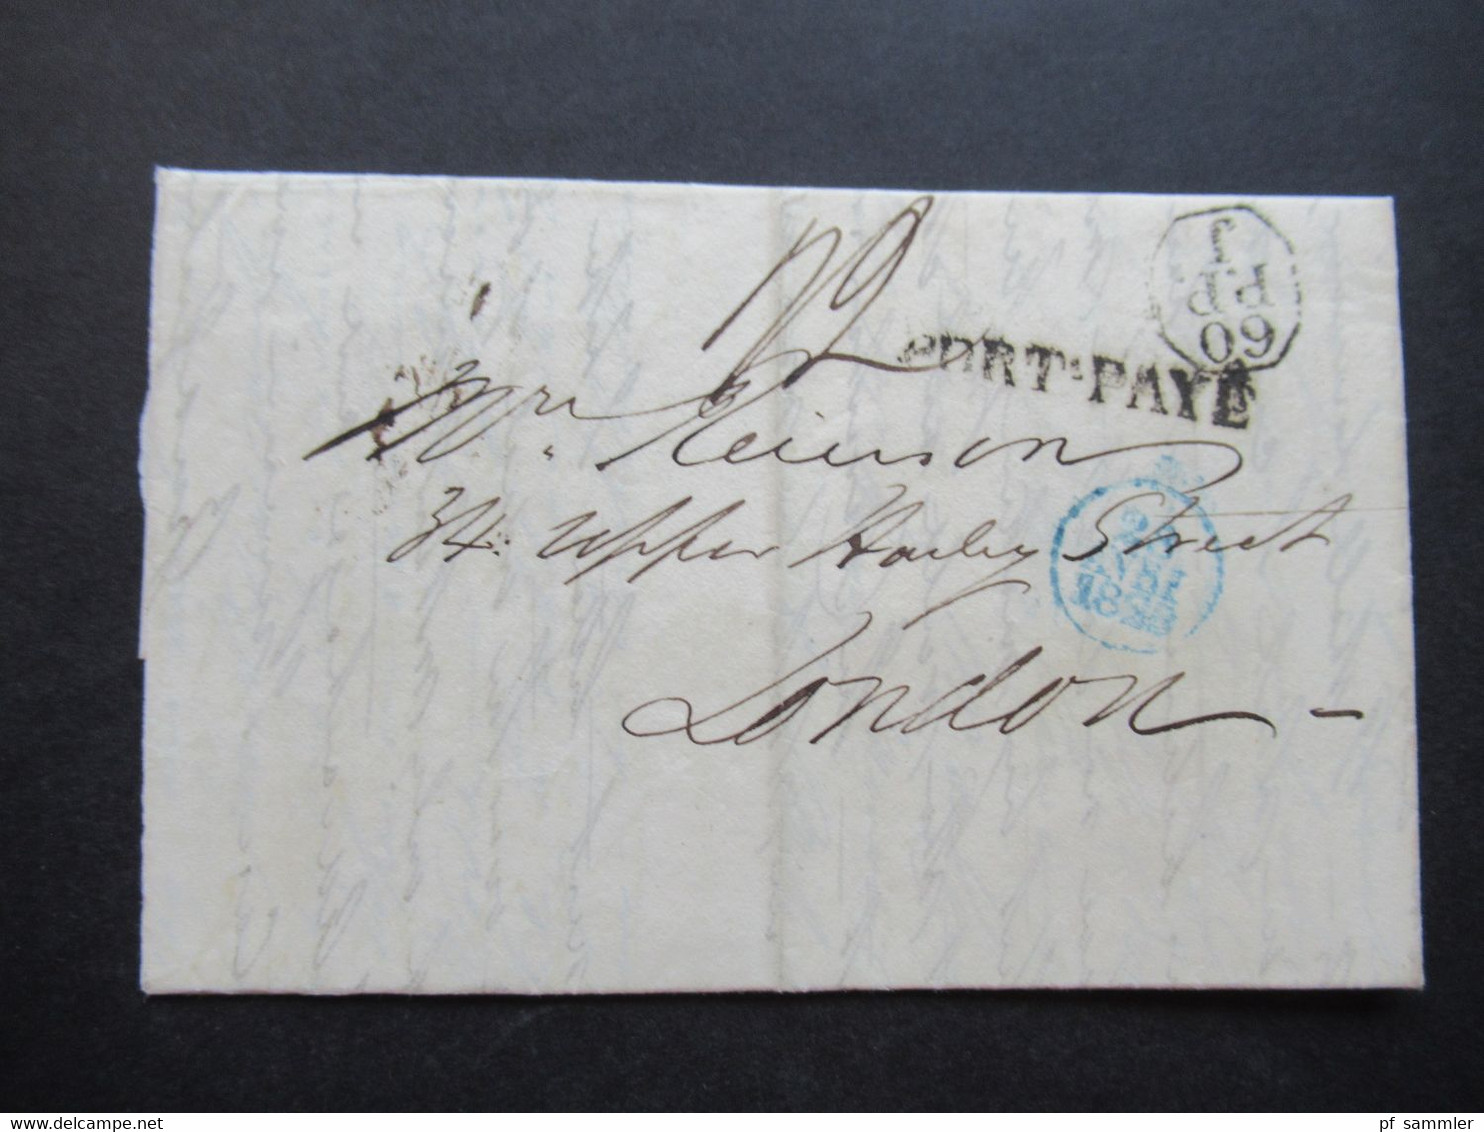 Frankreich 1829 Paris Und London Stempel L1 Port - Paye Und 60 P.P. J Faltbrief Mit Viel Inhalt! - Entry Postmarks